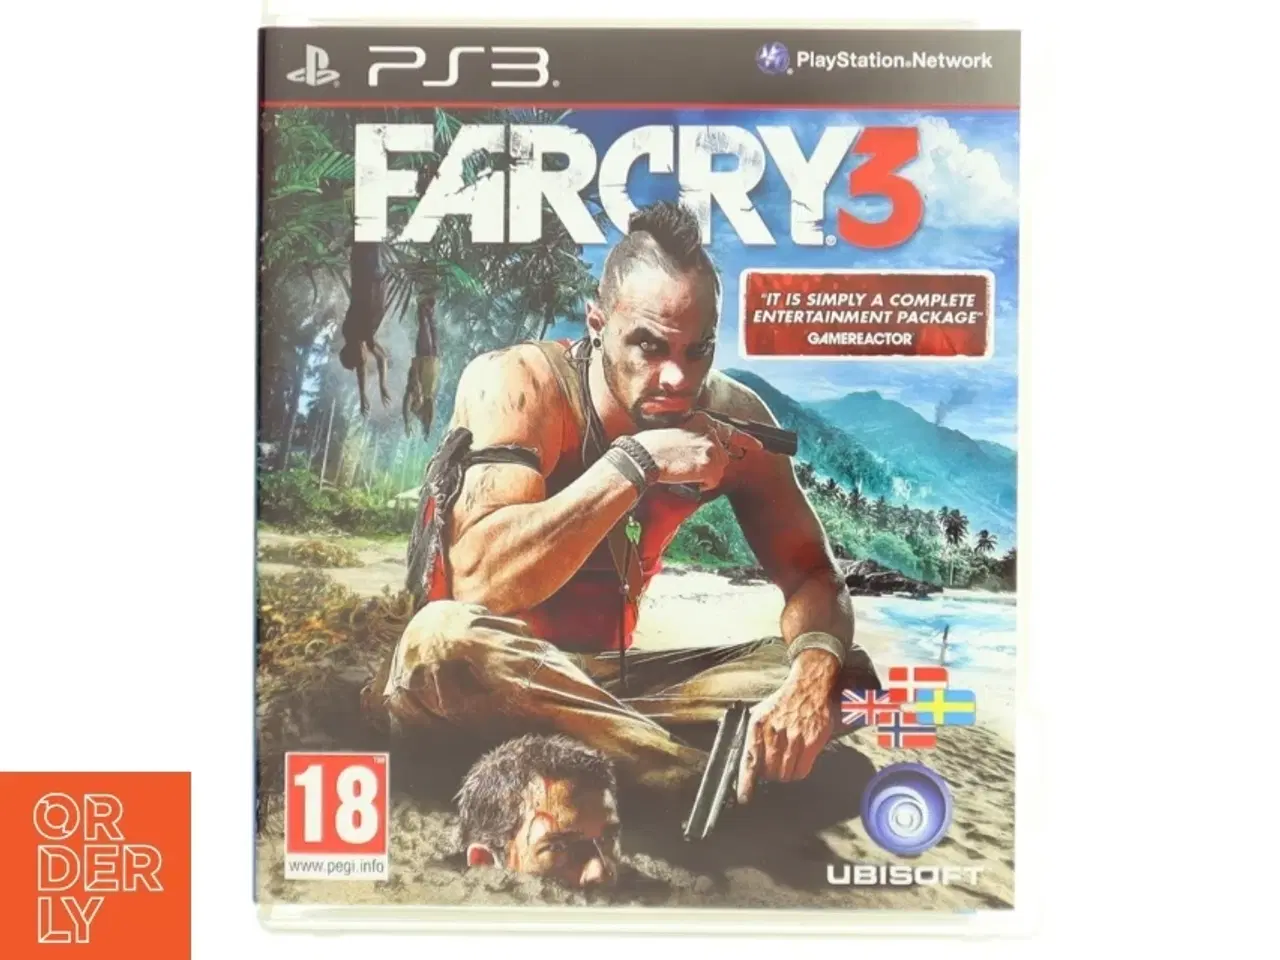 Billede 1 - Far Cry 3 til PS3 fra Ubisoft